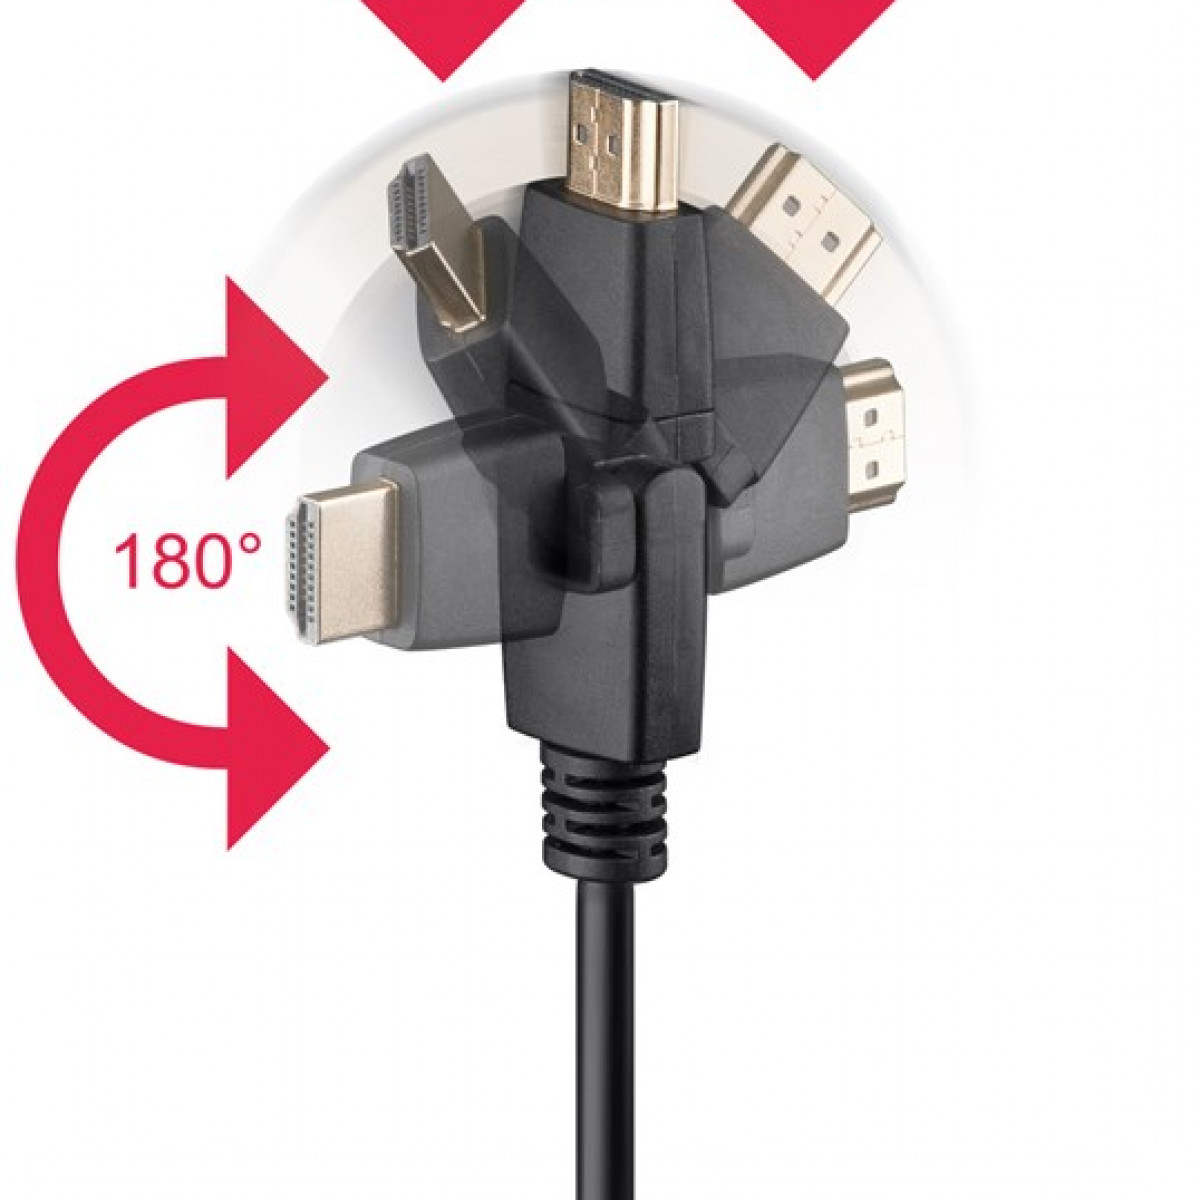 GOOBAY HDMI Kabel Ethernet mit High-Speed-HDMI™-360°-Kabel